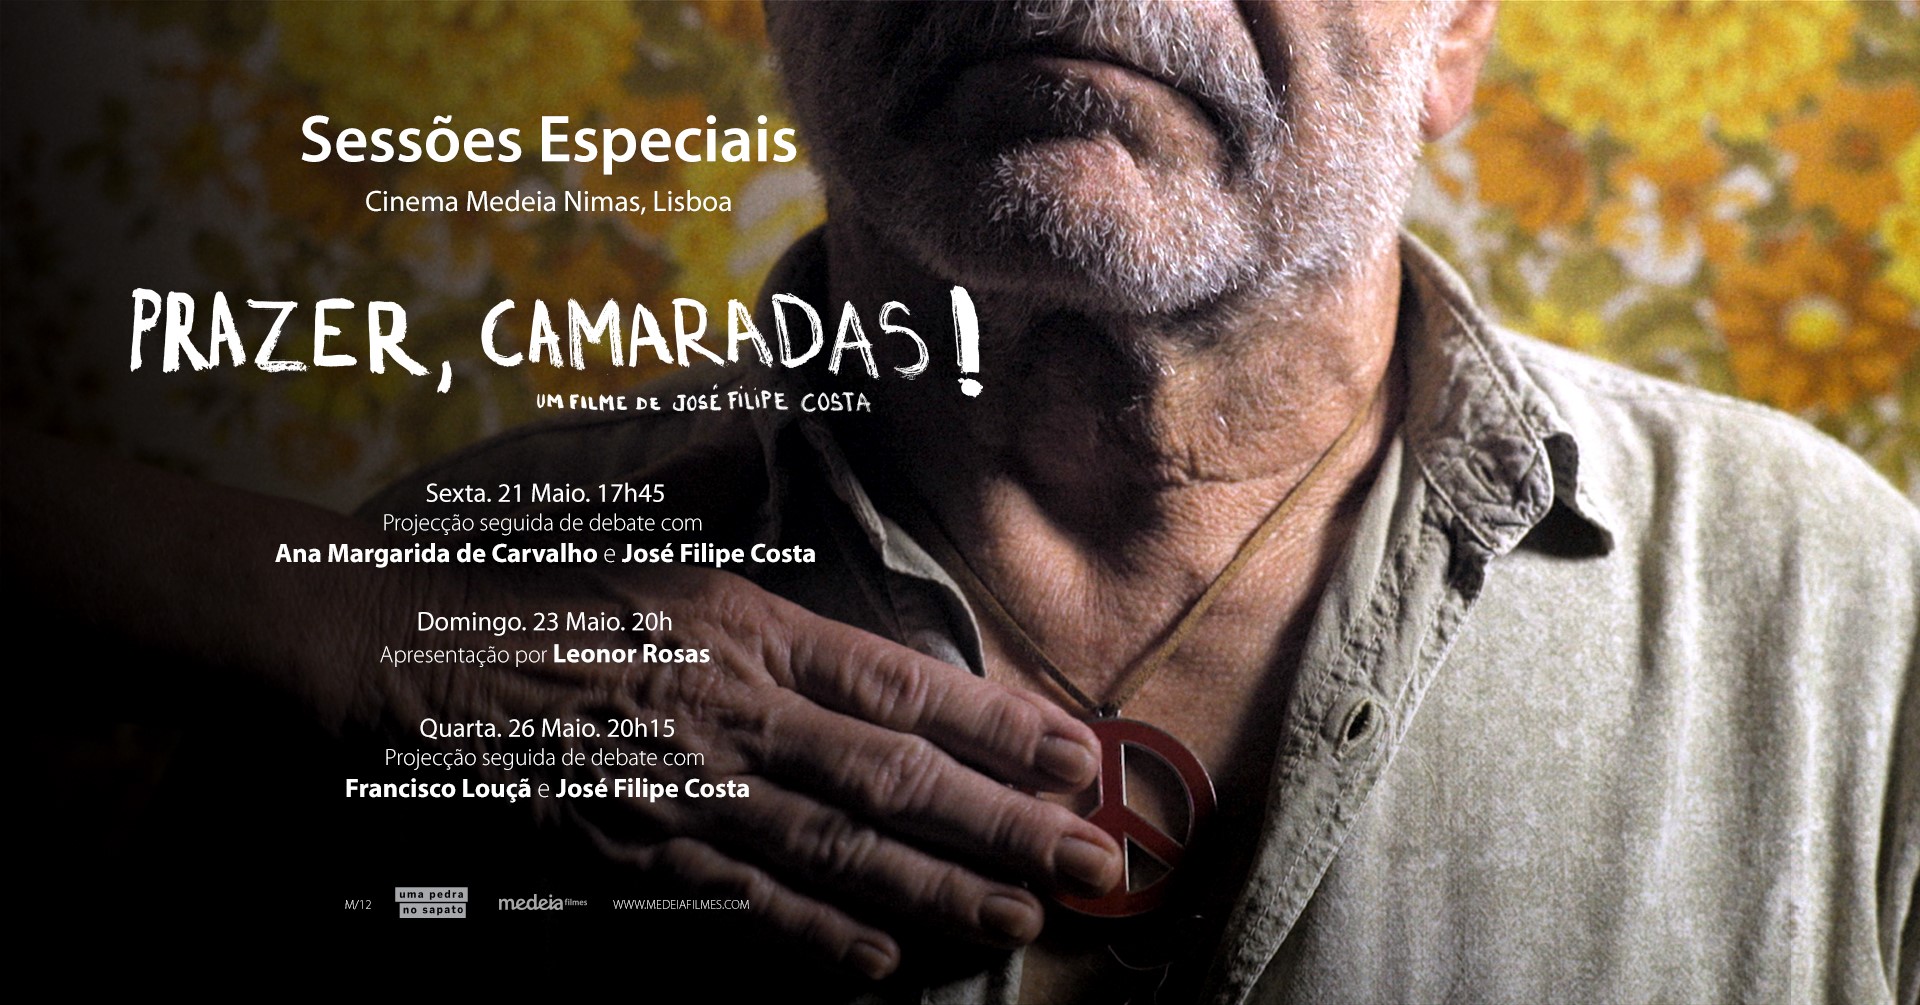 SESSÕES ESPECIAIS com presença do realizador: Prazer, Camaradas!, de José Filipe Costa | Nimas